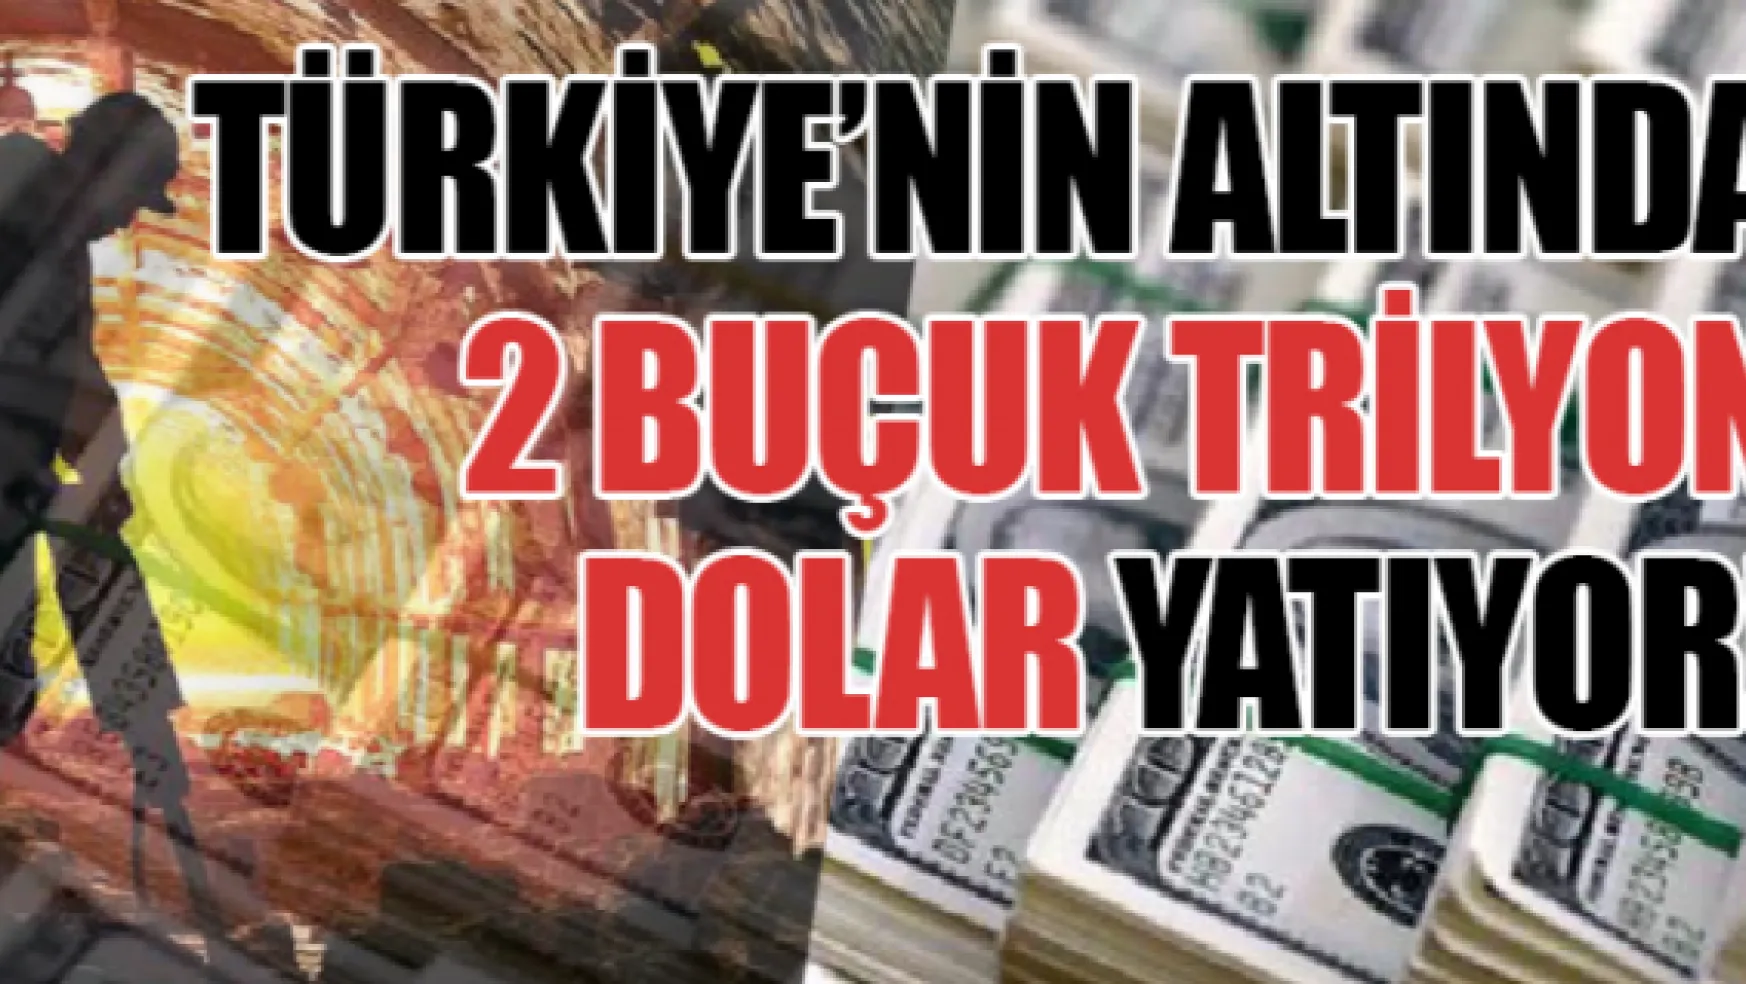 Türkiye'nin altında 2 buçuk trilyon dolar yatıyor!